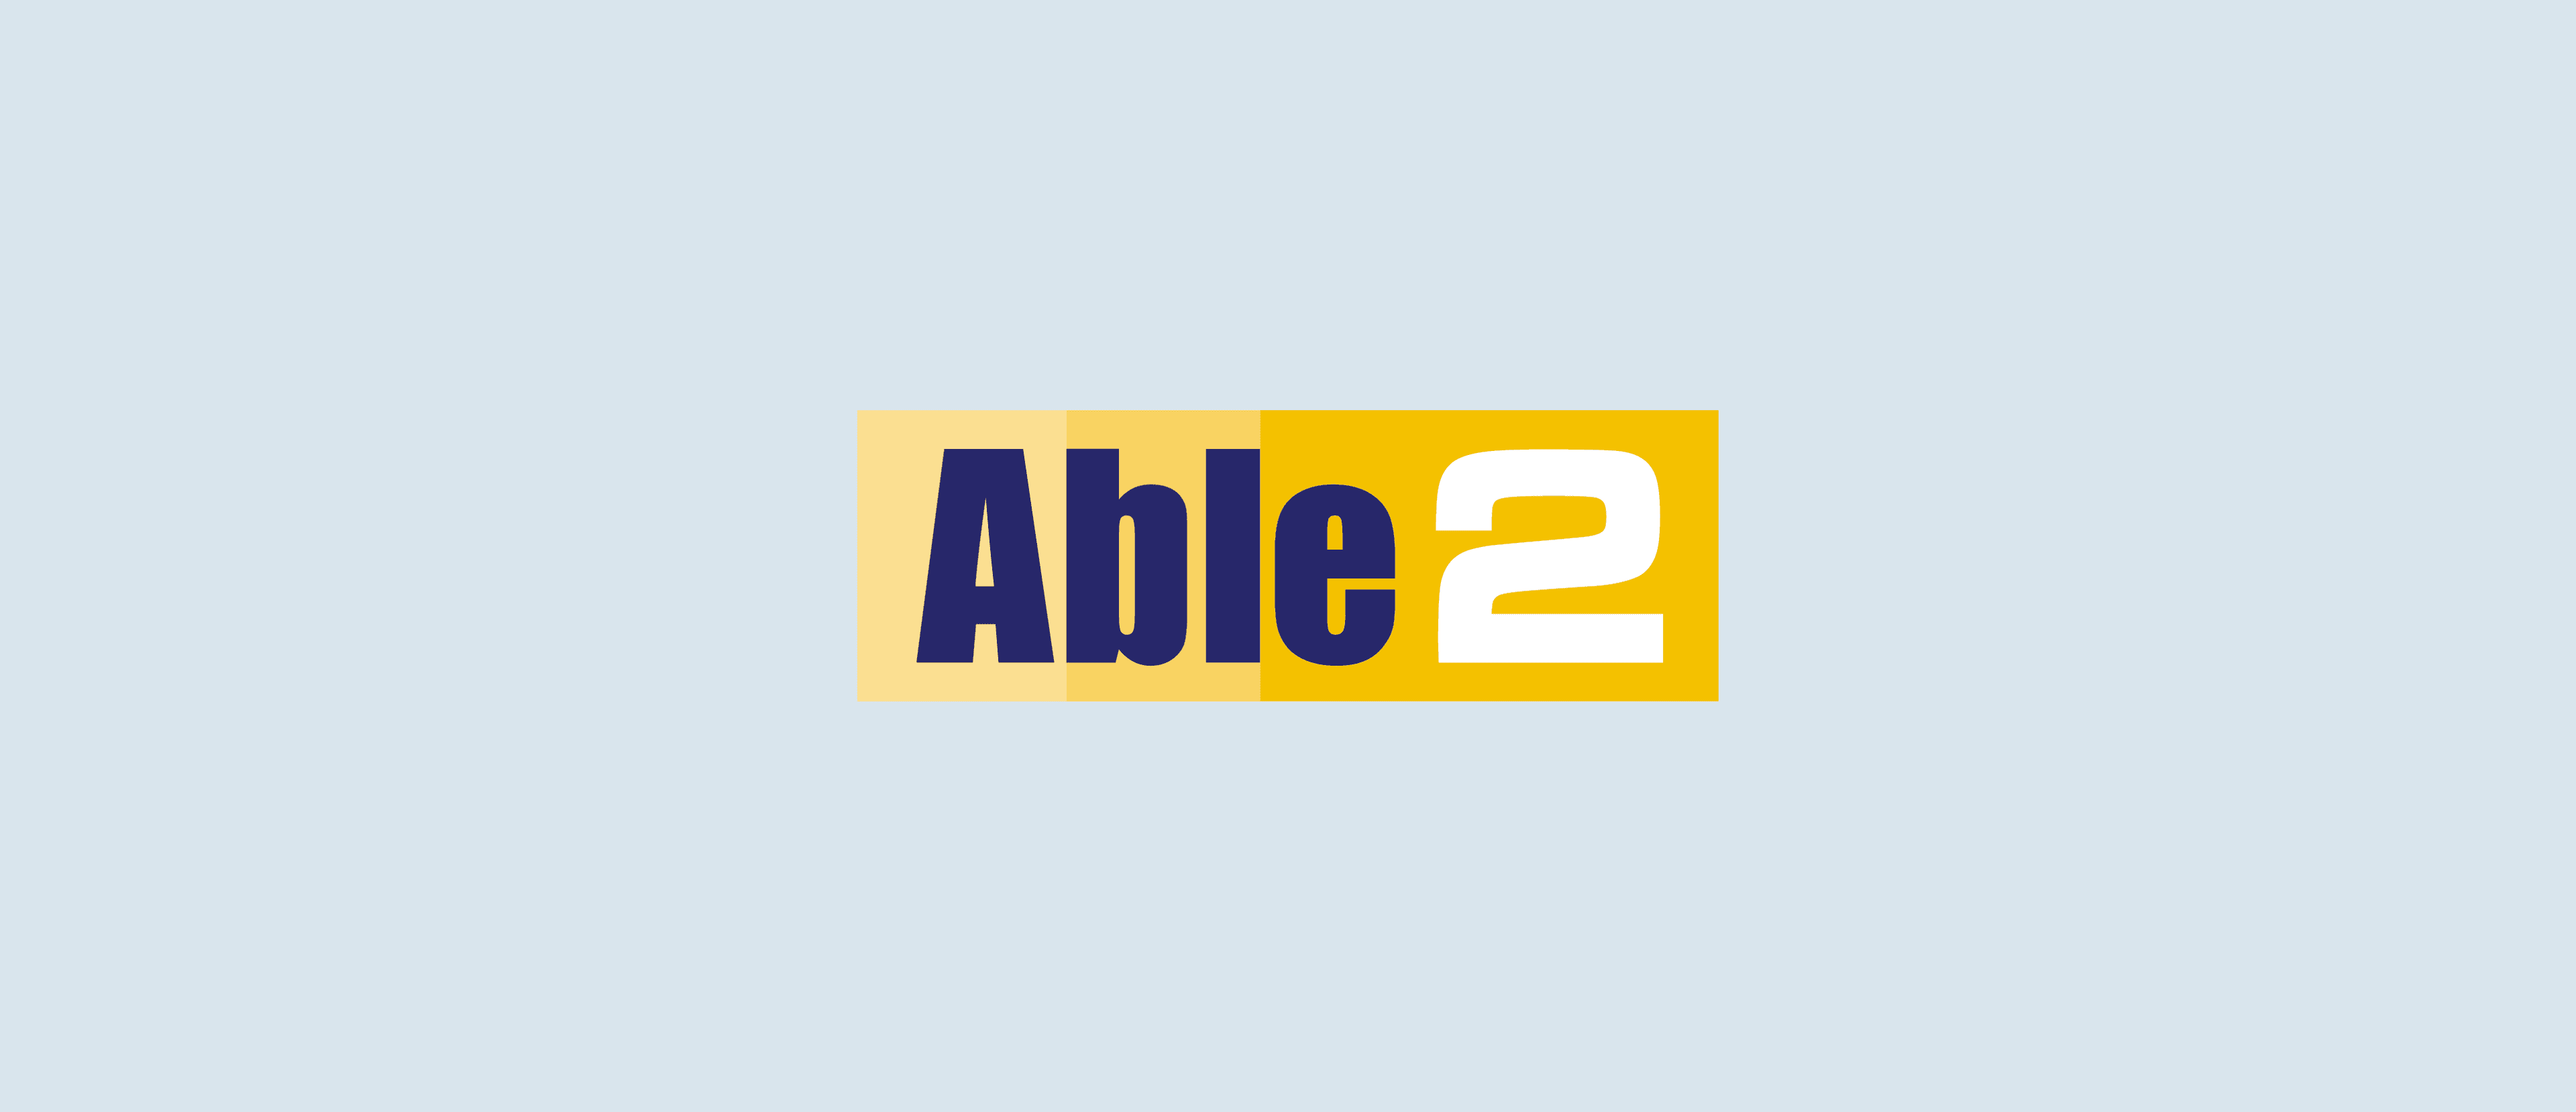 Able2 Logo